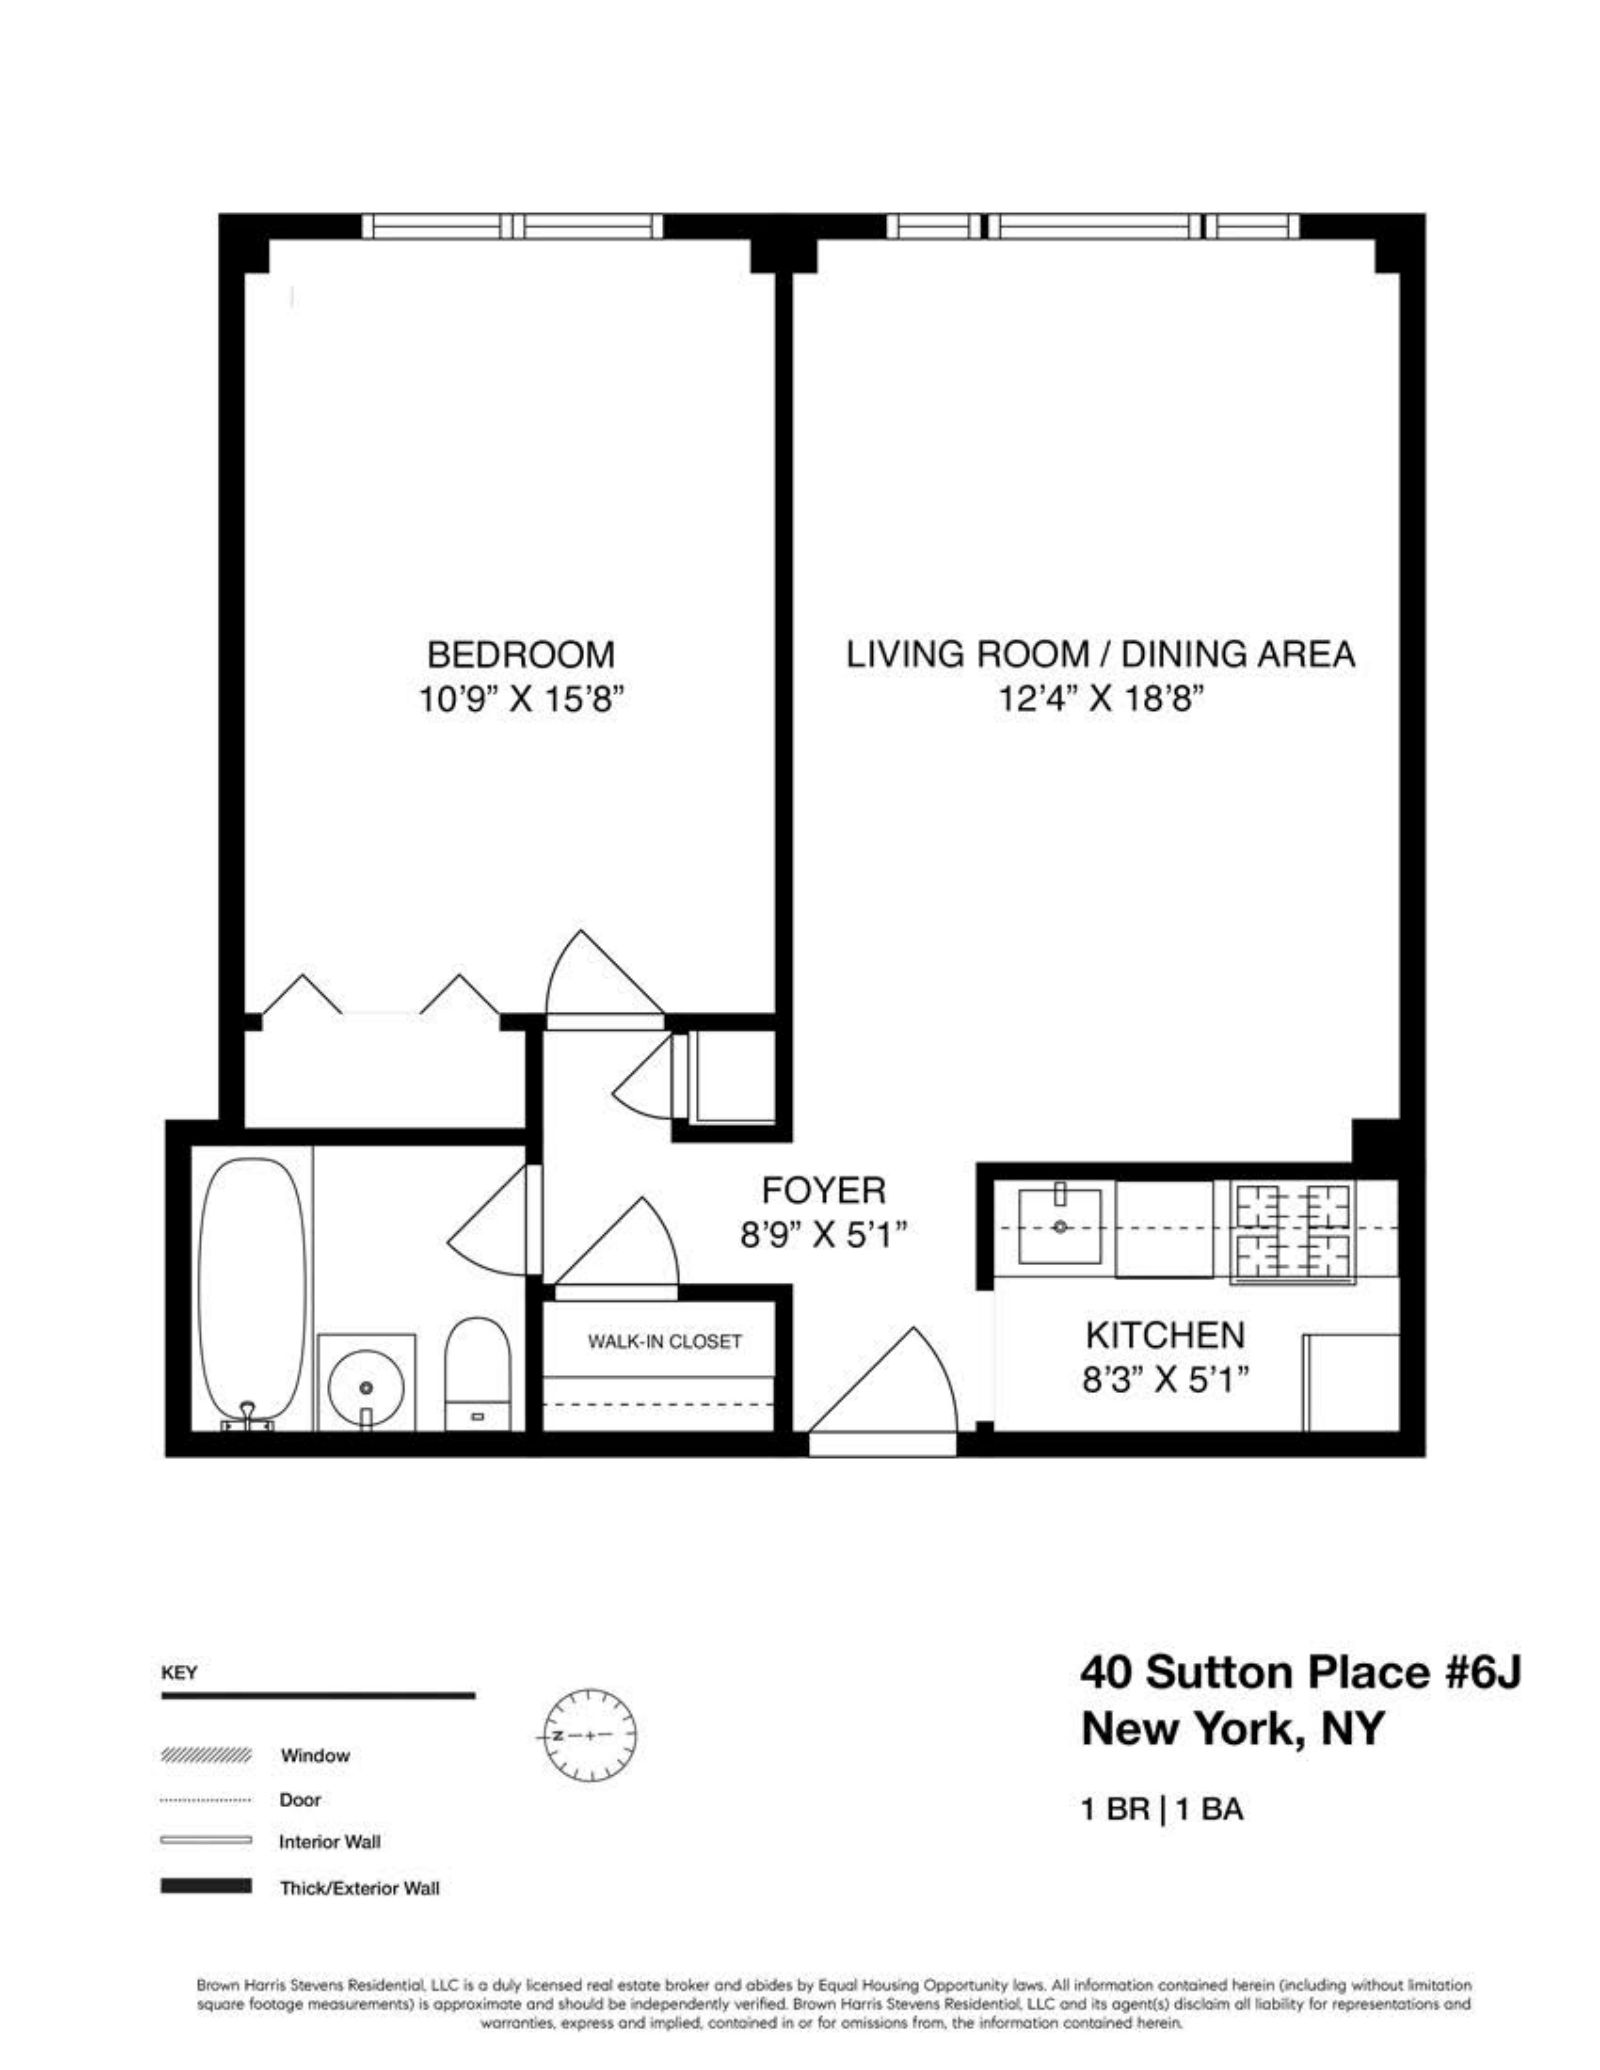 Floorplan for 40 Sutton Place, 6J